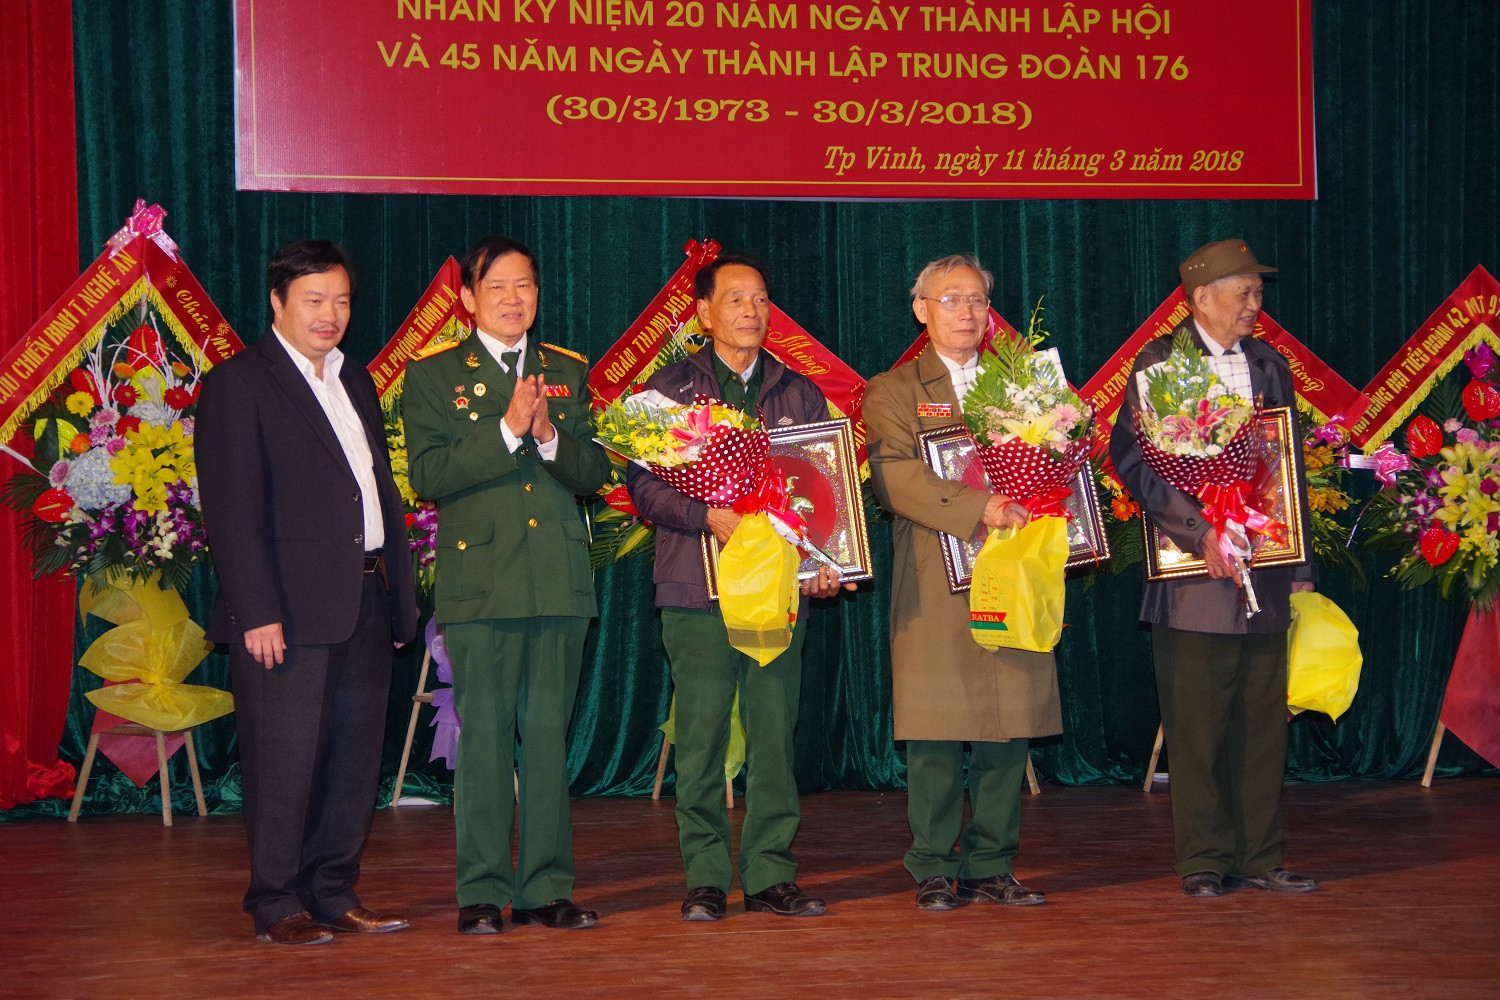 Tặng quà cho các cựu quân nhân tuổi 70, 80... Ảnh: Phong Quang